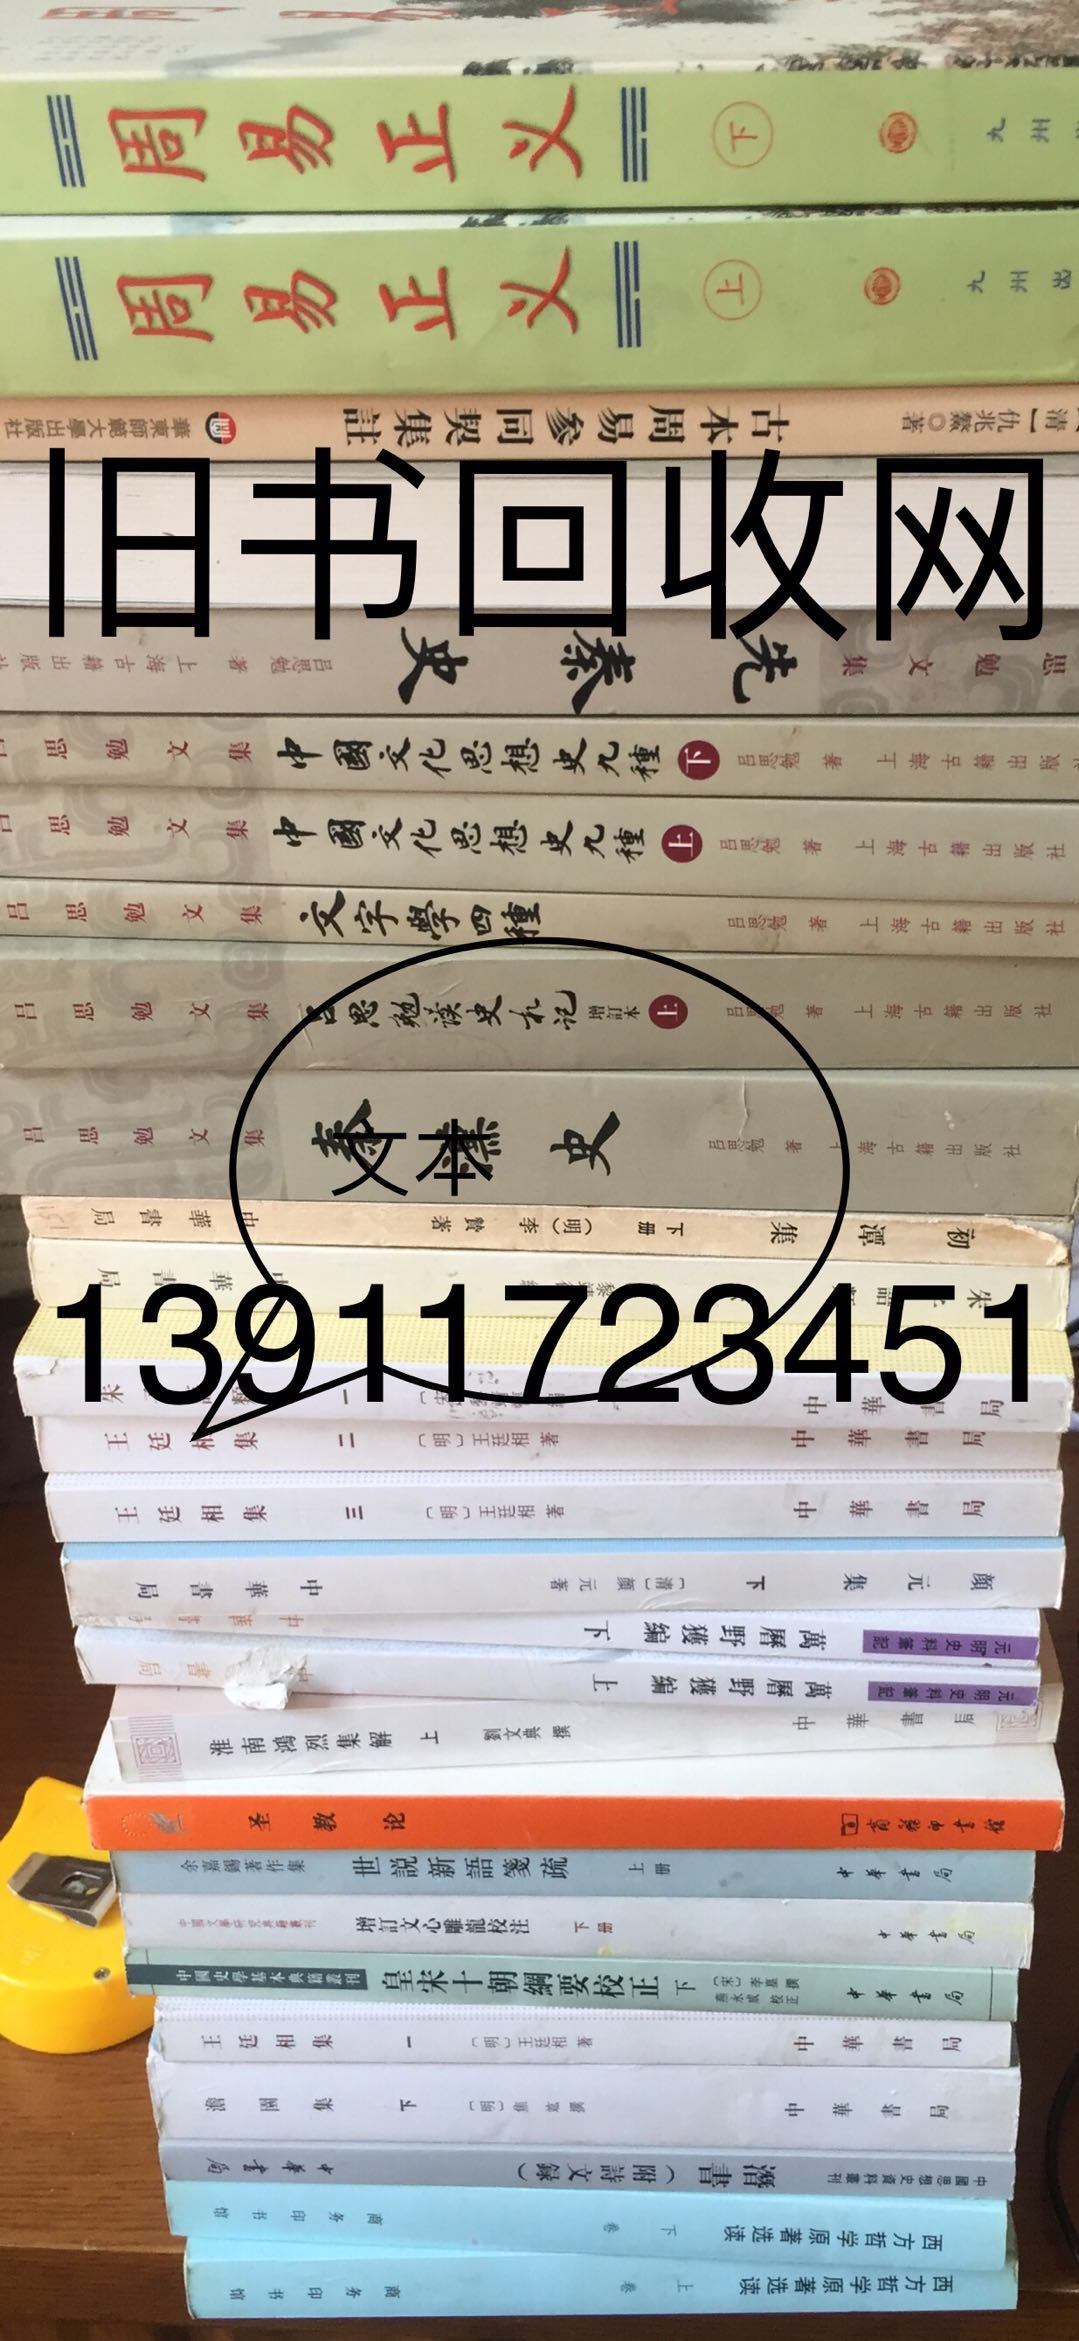 北京 海淀区 上地 搬家 文学书籍 工具书 社科 经济类 收二手书 图书旧书回收网